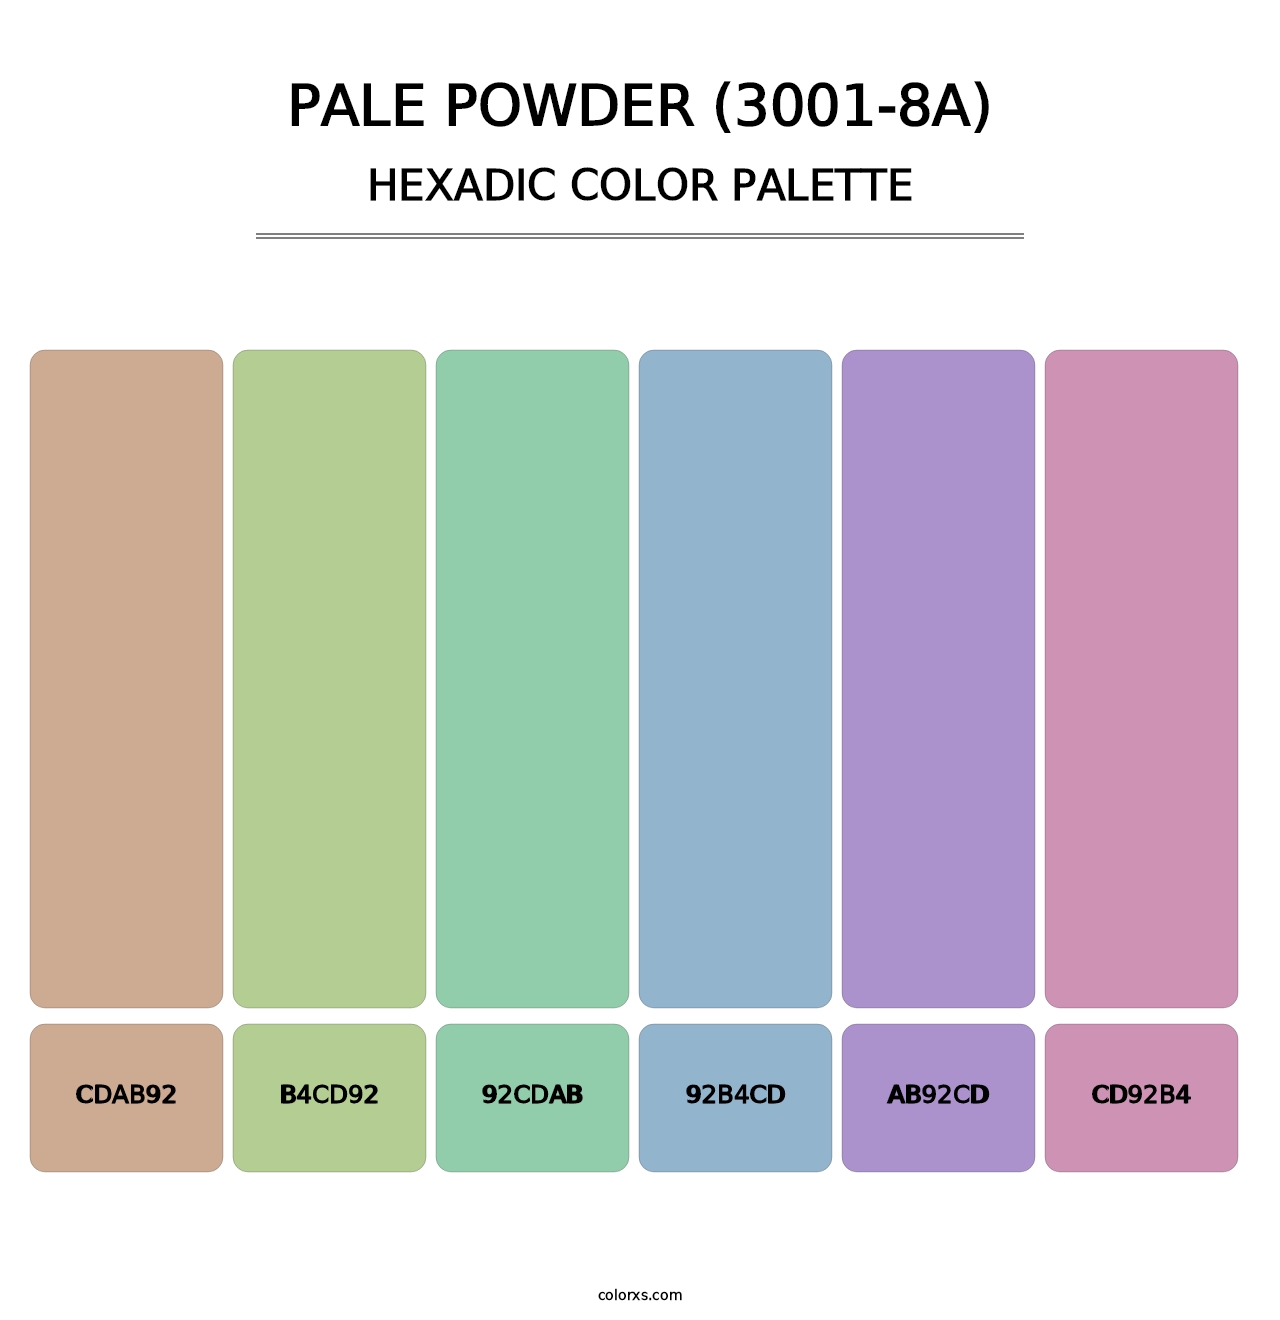 Pale Powder (3001-8A) - Hexadic Color Palette